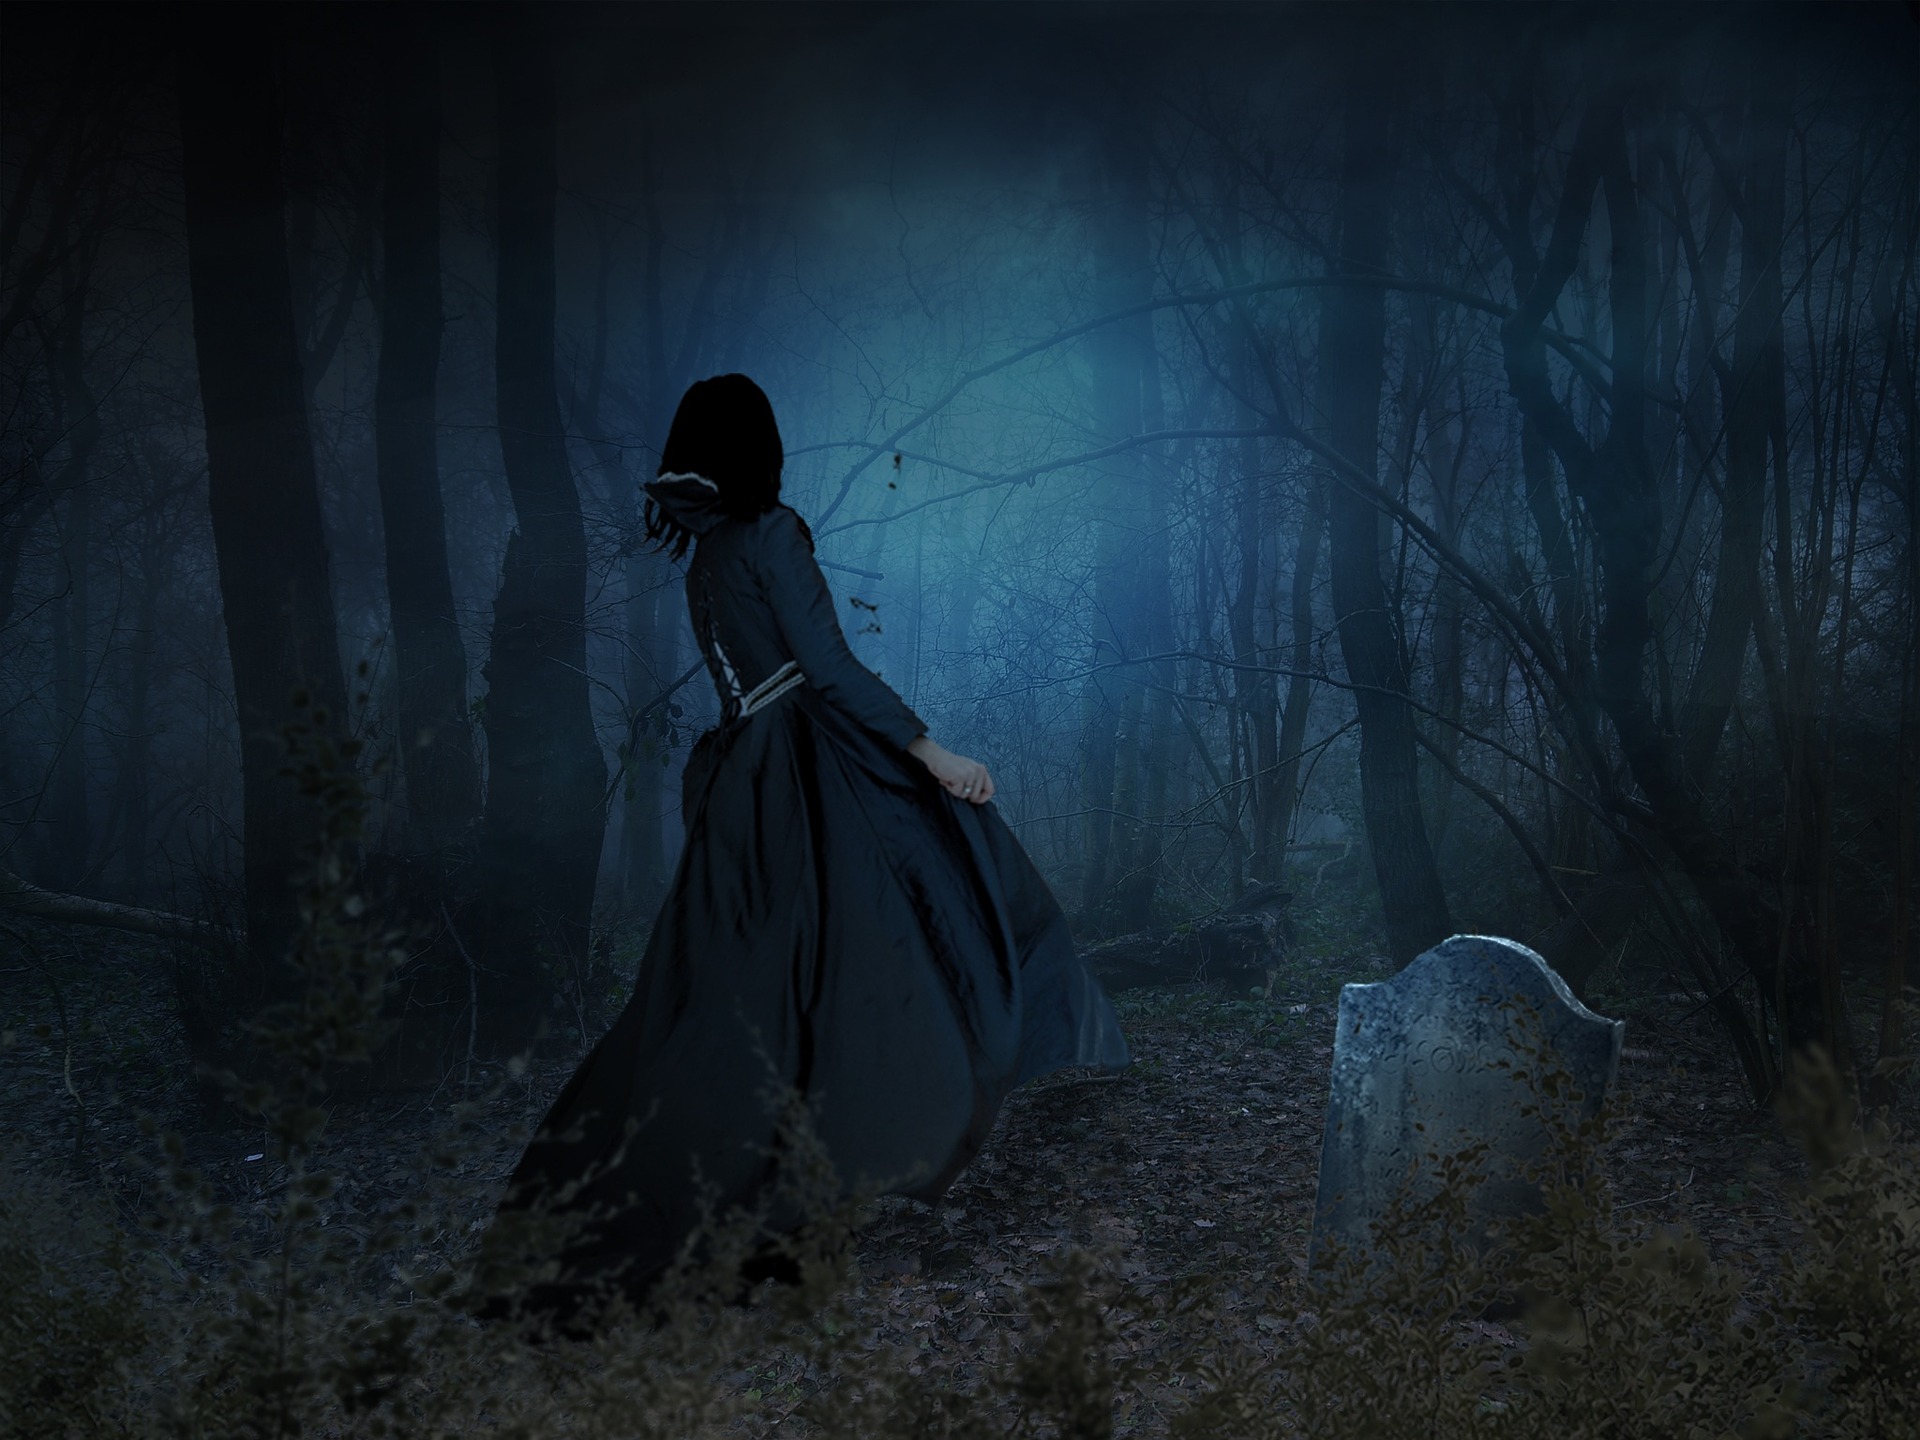 https://pixabay.com/en/scary-eerie-spooky-dark-fog-666620/